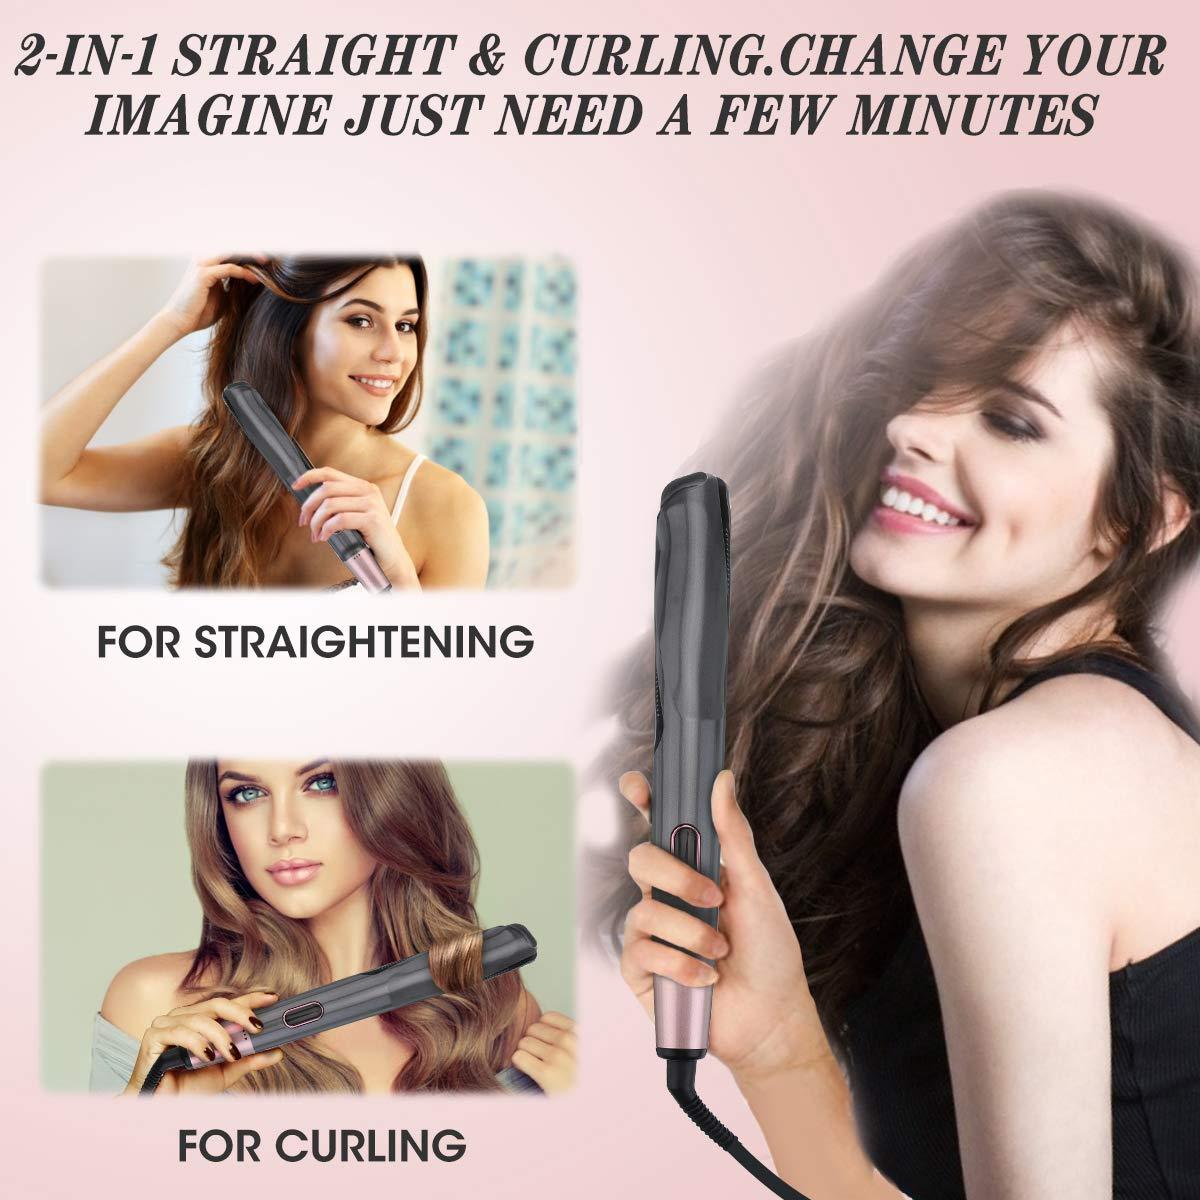 Placă de îndreptat și ondulat părul Curl & Straight Confidence 2 in 1 - ShopGuru